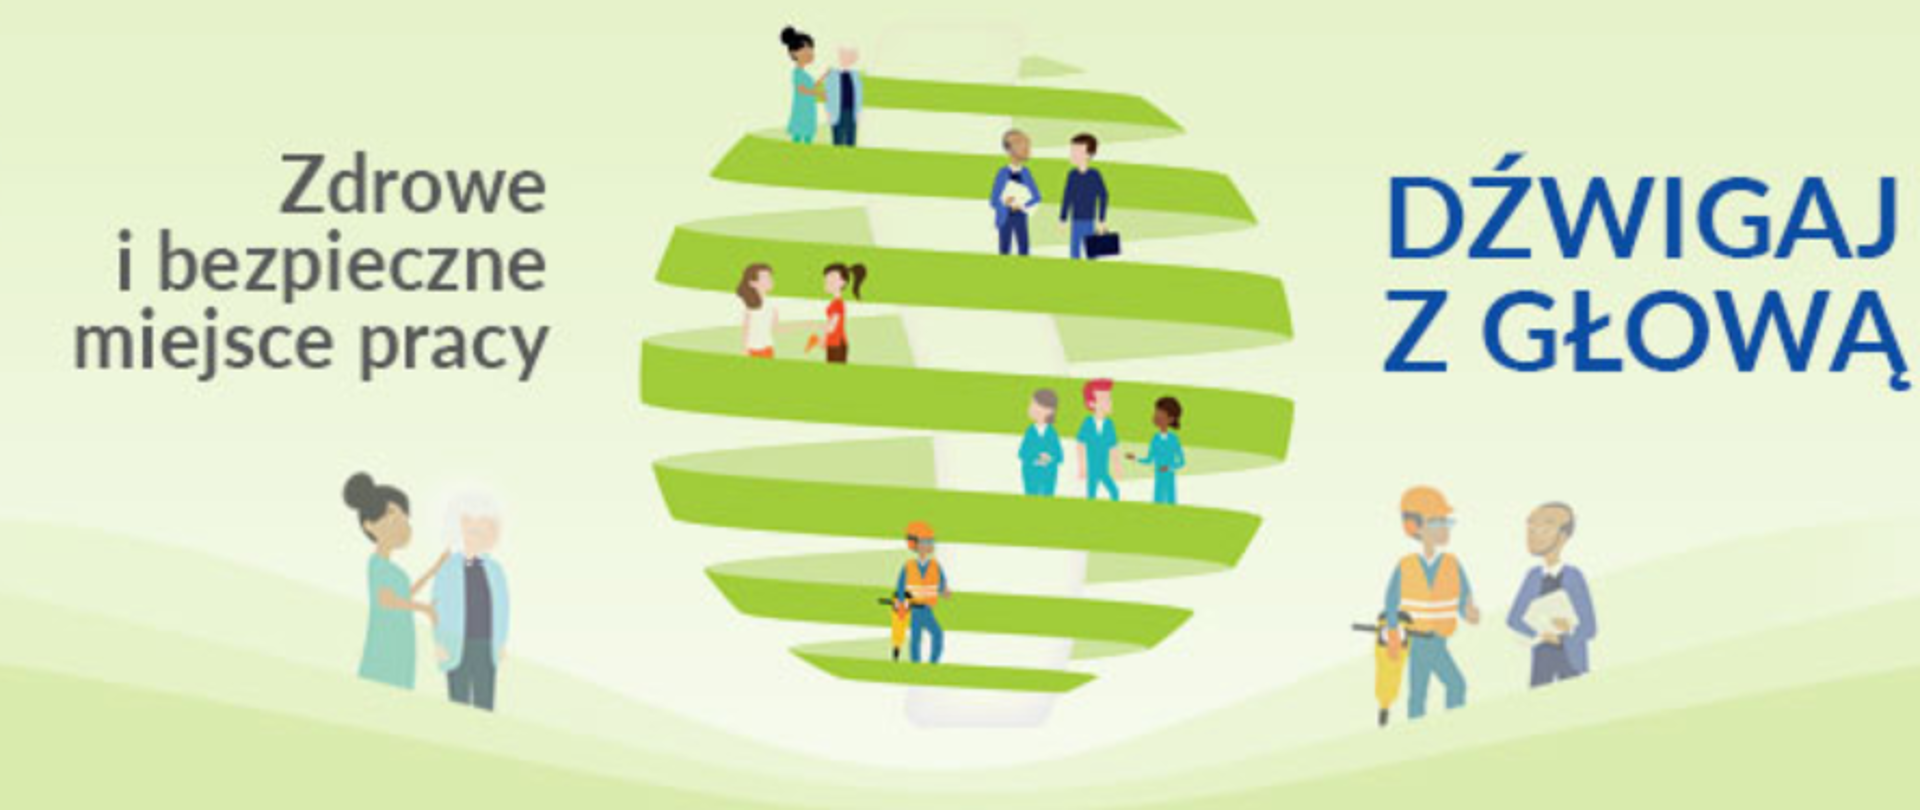 Napis "Zdrowe i bezpieczne miejsce pracy. Dźwigaj z głową" W centralnej części grafiki zielona spirala na której umieszczone są osoby podczas wykonywania pracy. 